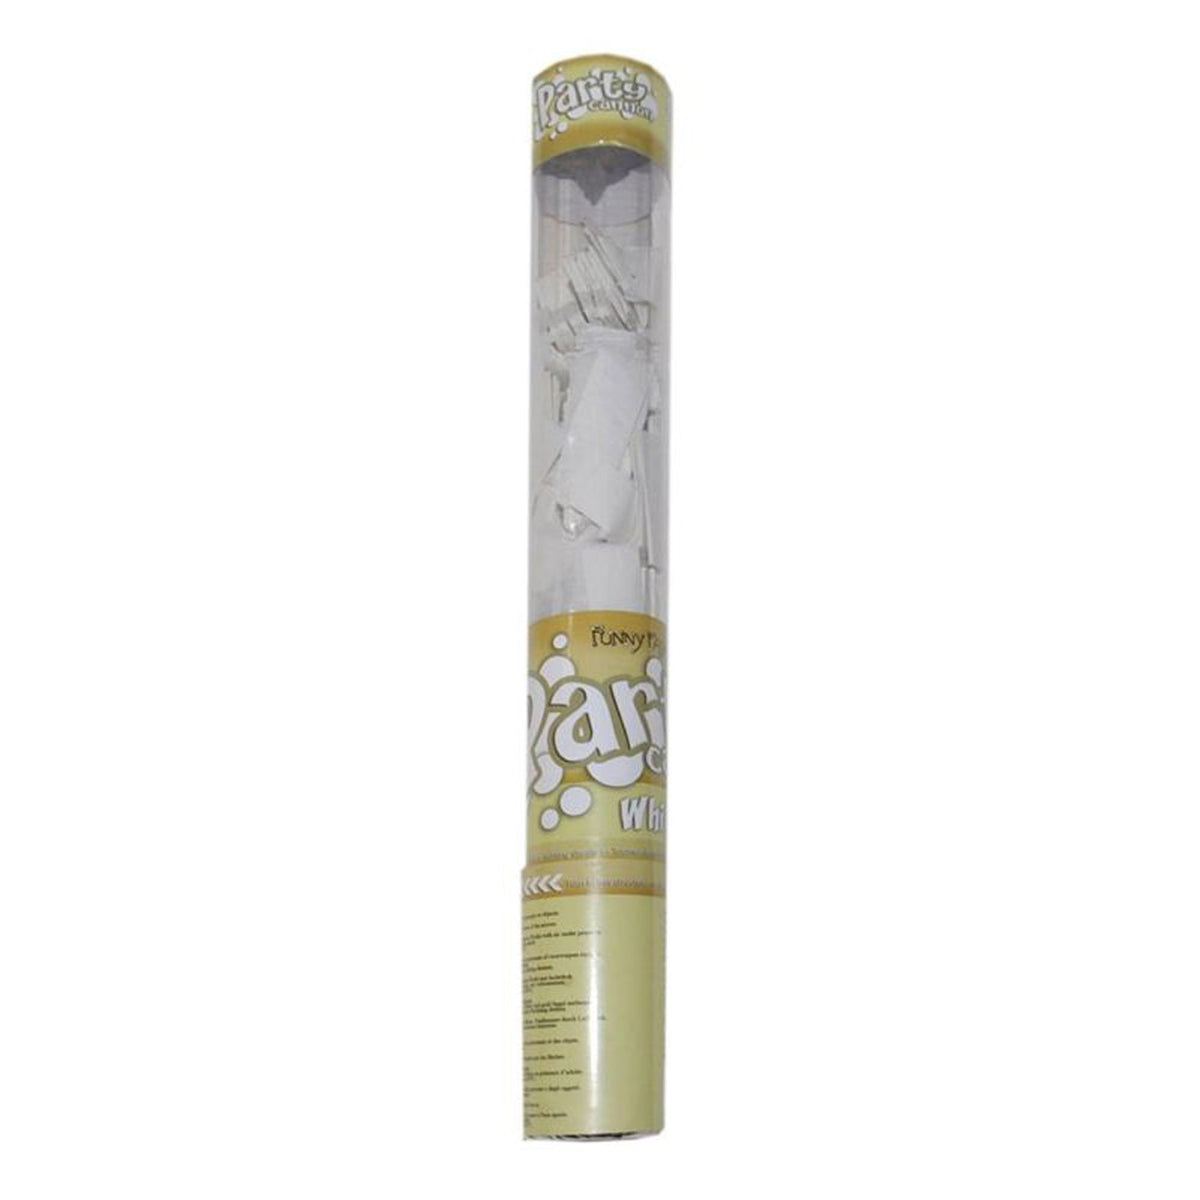 FUNNY FASHION USA Age Specific Birthday White Confetti Cannon, 16 Inches, 1 Count